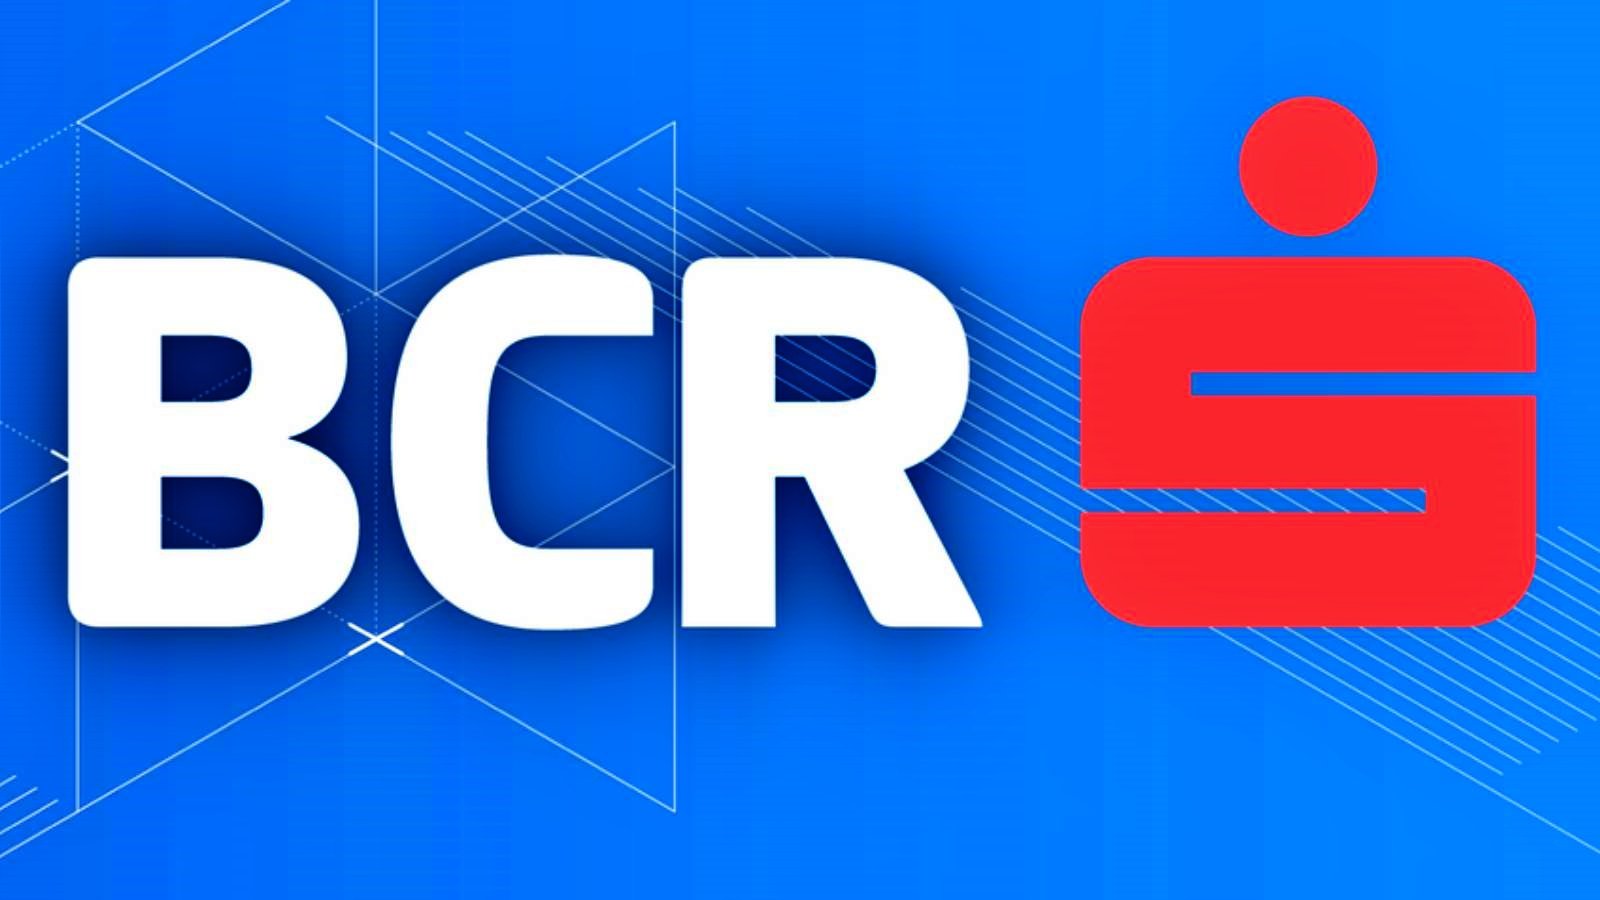 BCR Roumanie Mesures officielles LAST MOMENT Roumanie GRATUIT pour les clients nationaux